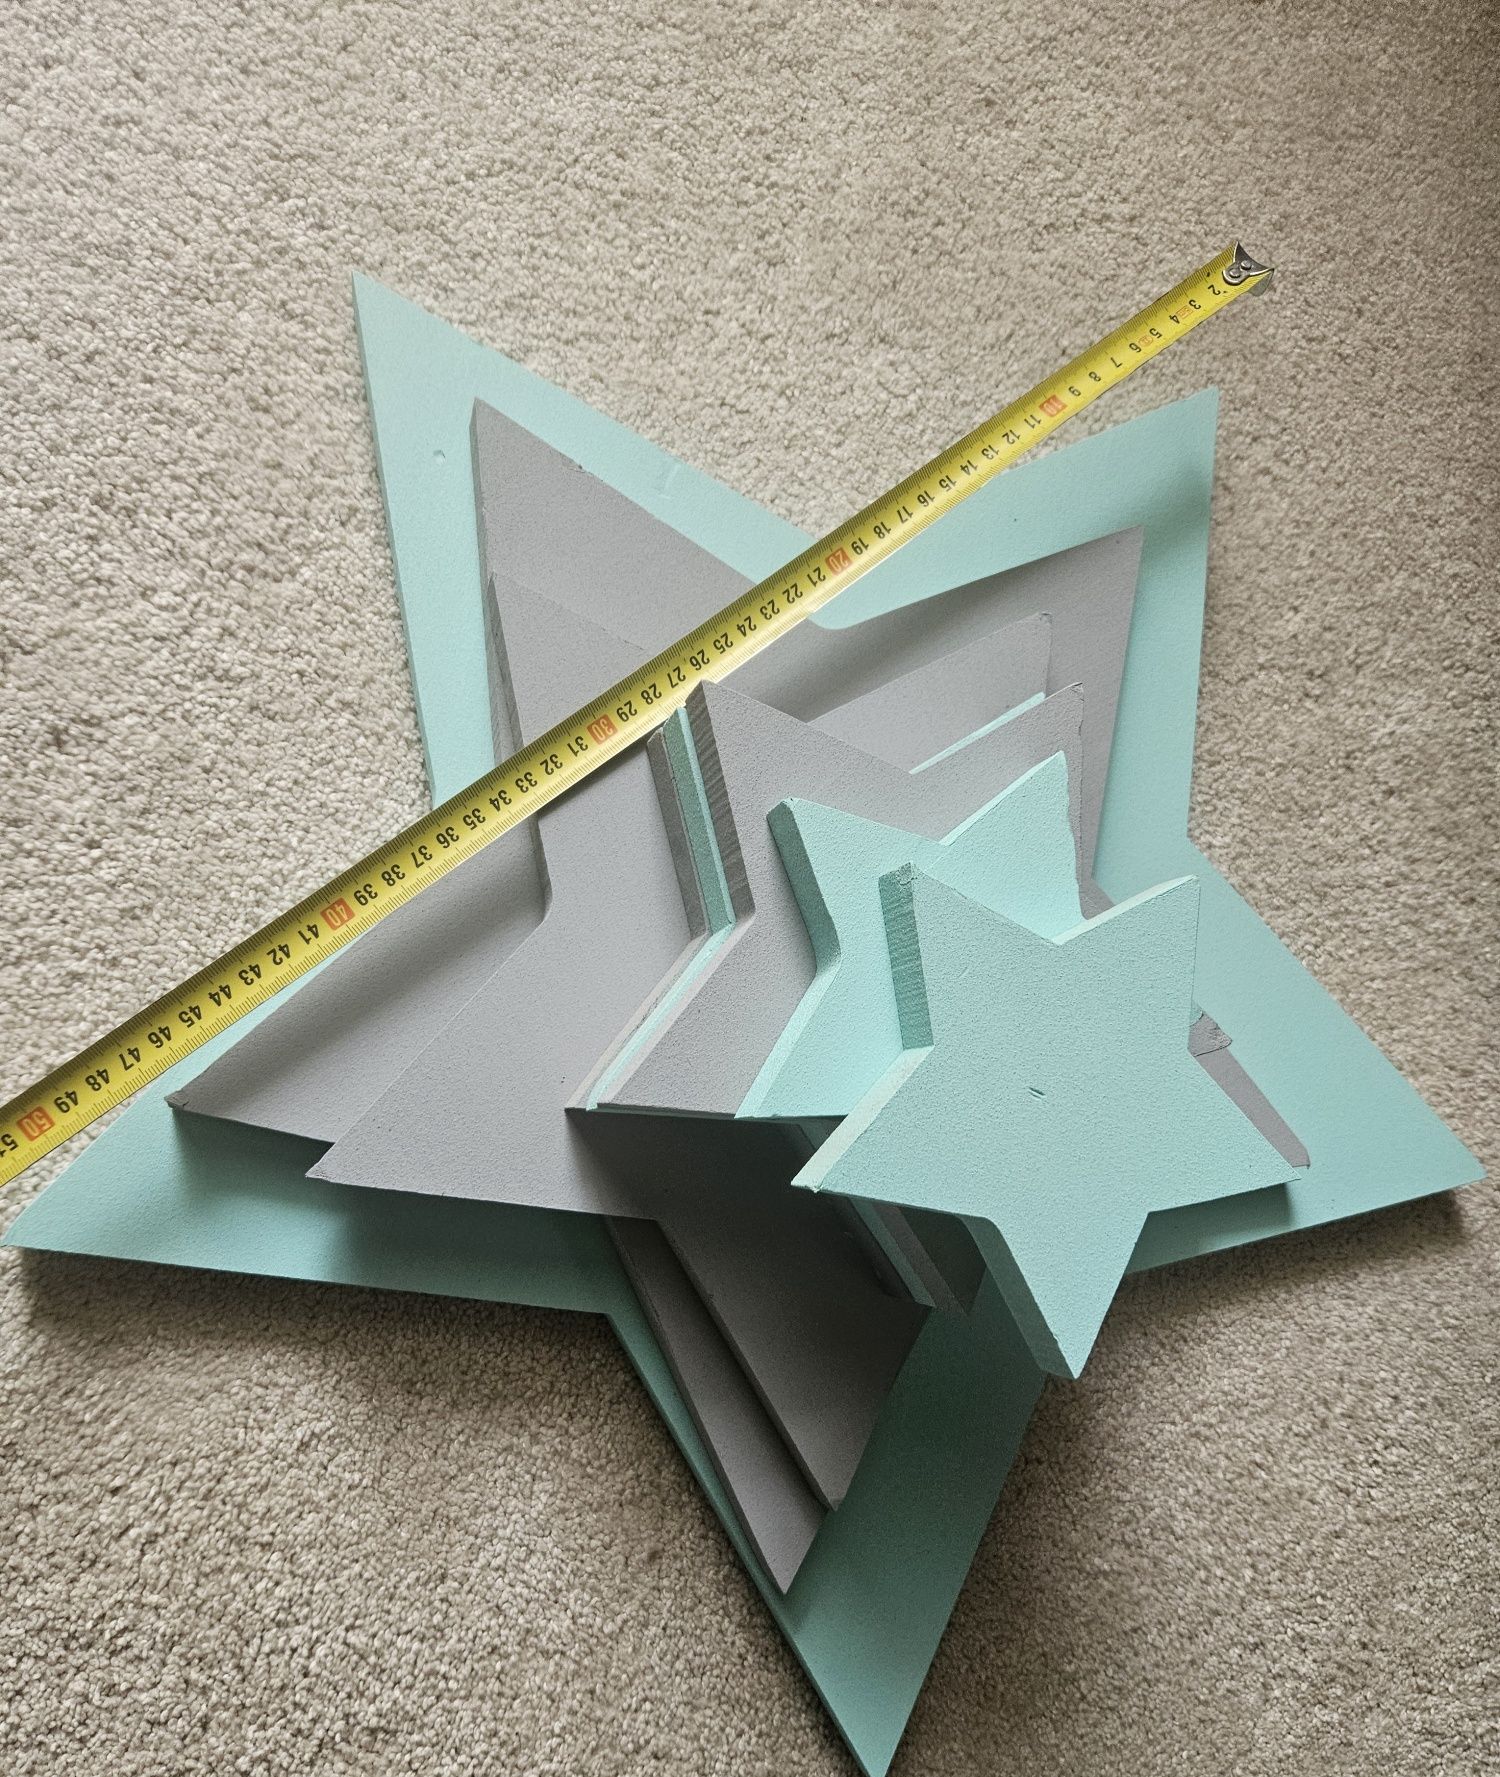 Gwiazdki 3D na ścianę lub sufit (13-53cm rozpiętości, grubość 2cm)